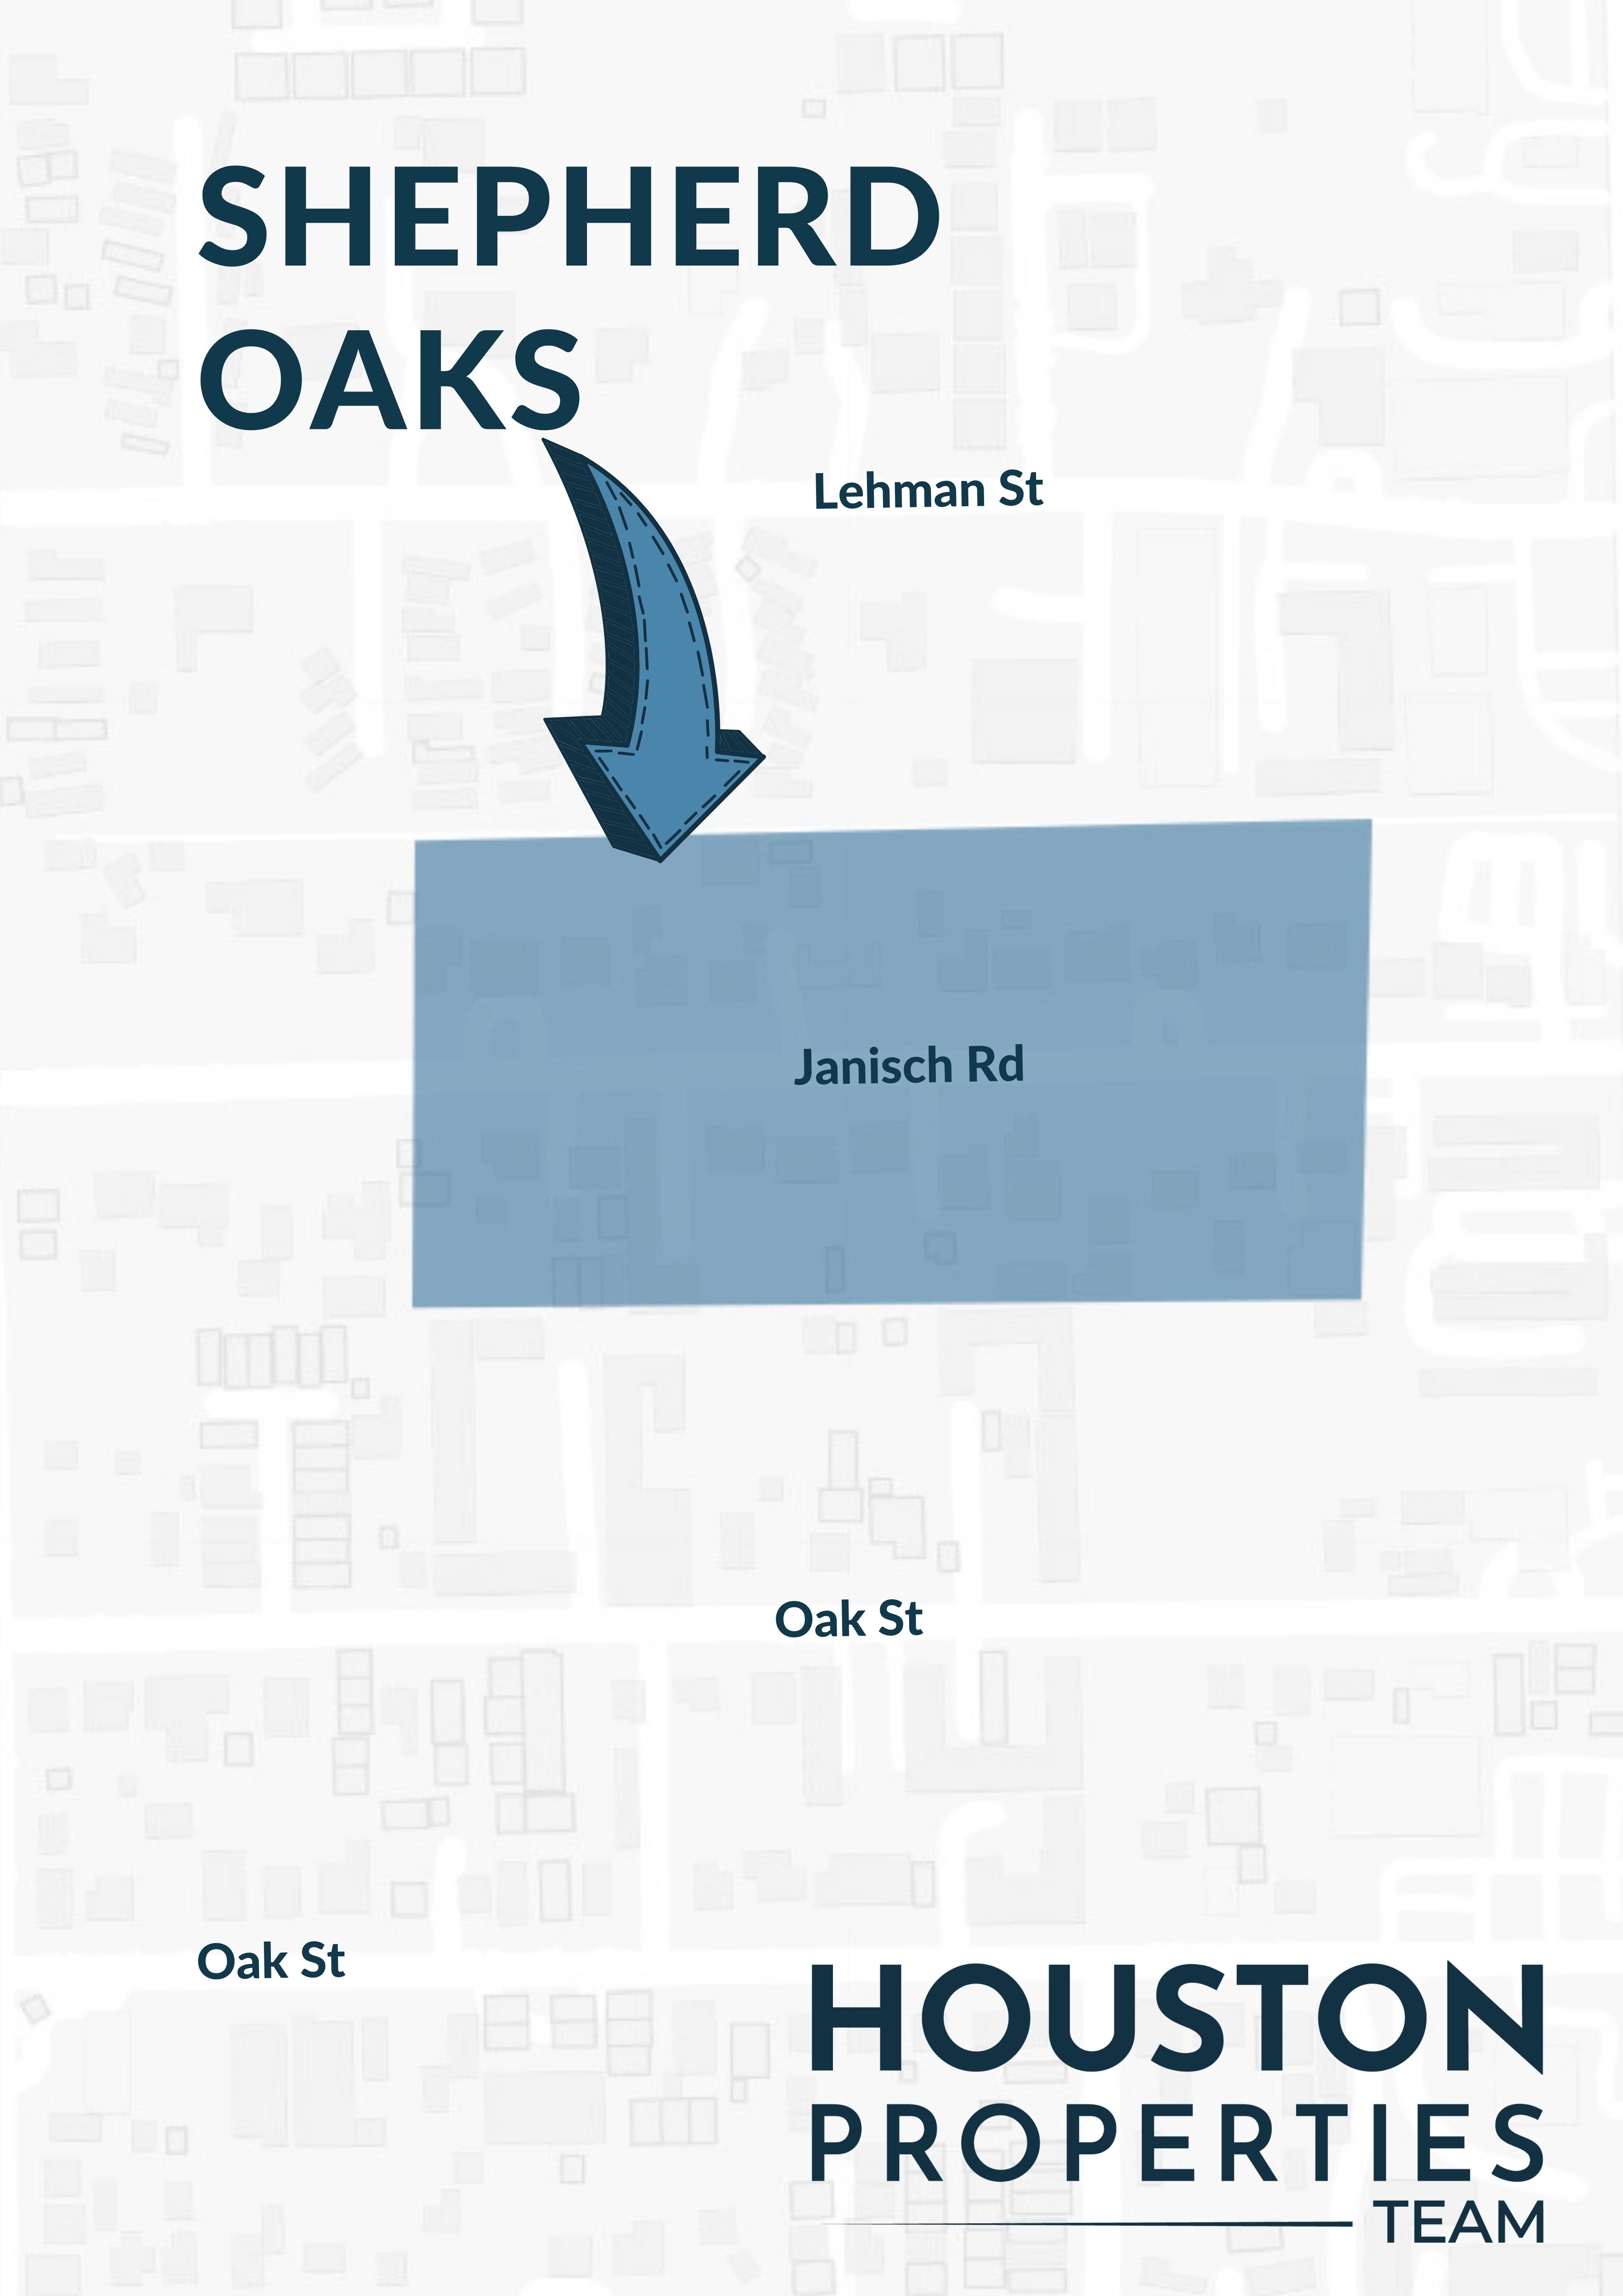 Map of Shepherd Oaks